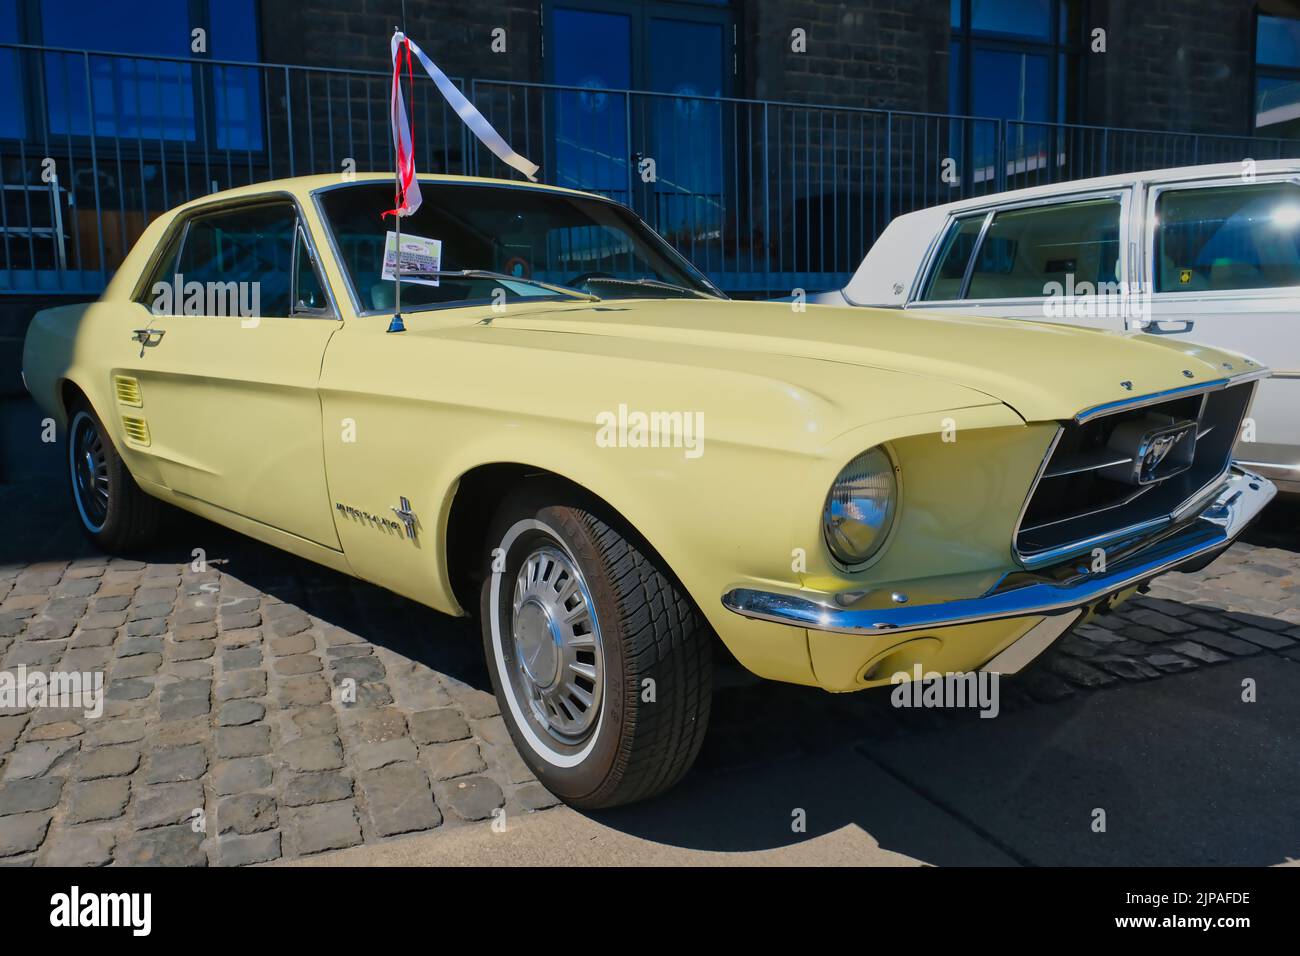 Ford Mustang des années 60 à l'exposition oldtimer à Cologne, vue diagonale de l'avant Banque D'Images